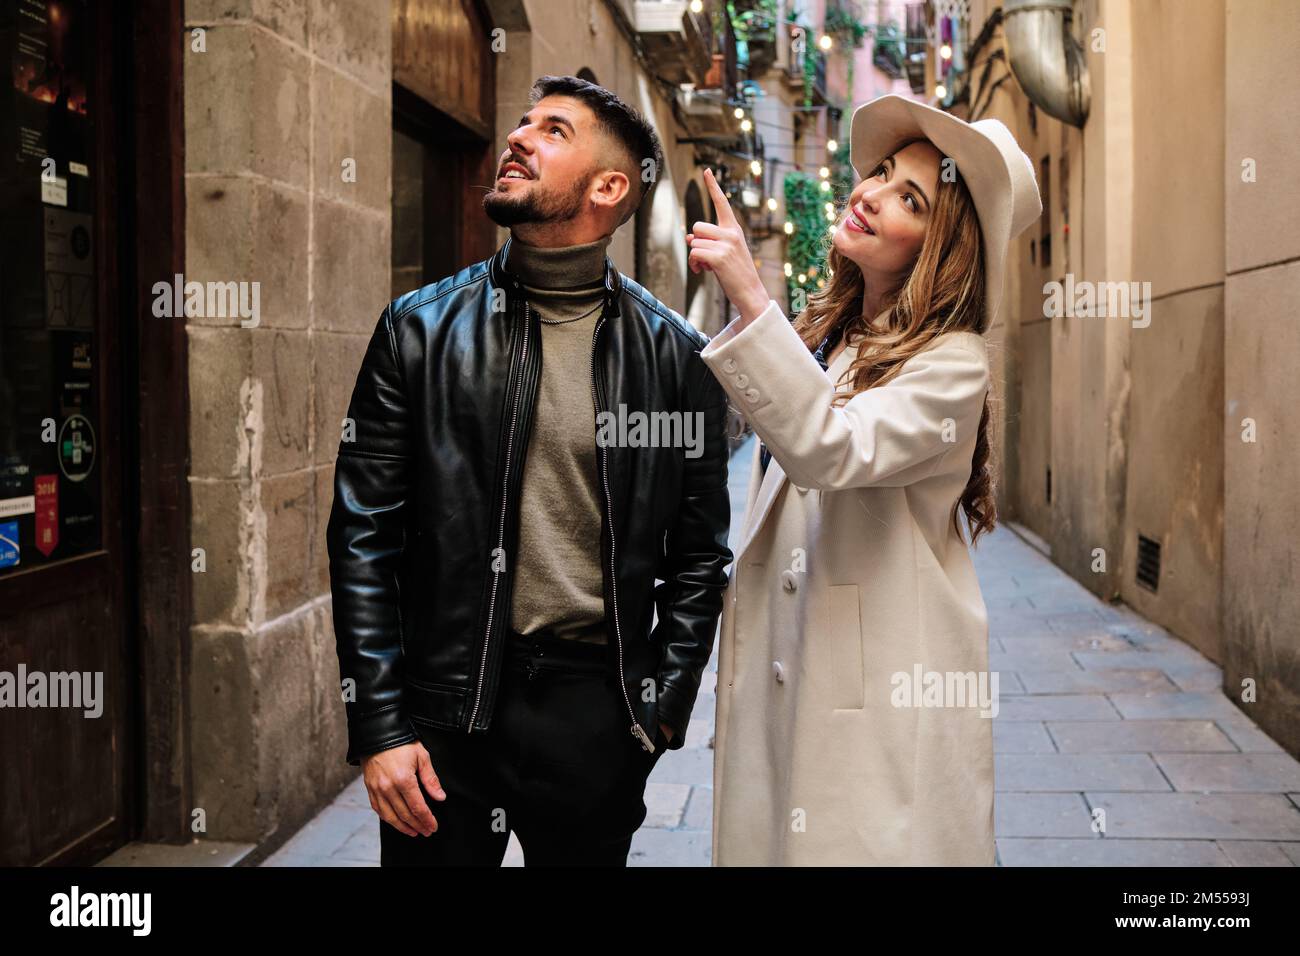 Ein Paar, das eine Stadt besucht, während es auf ein Gebäude zeigt Stockfoto